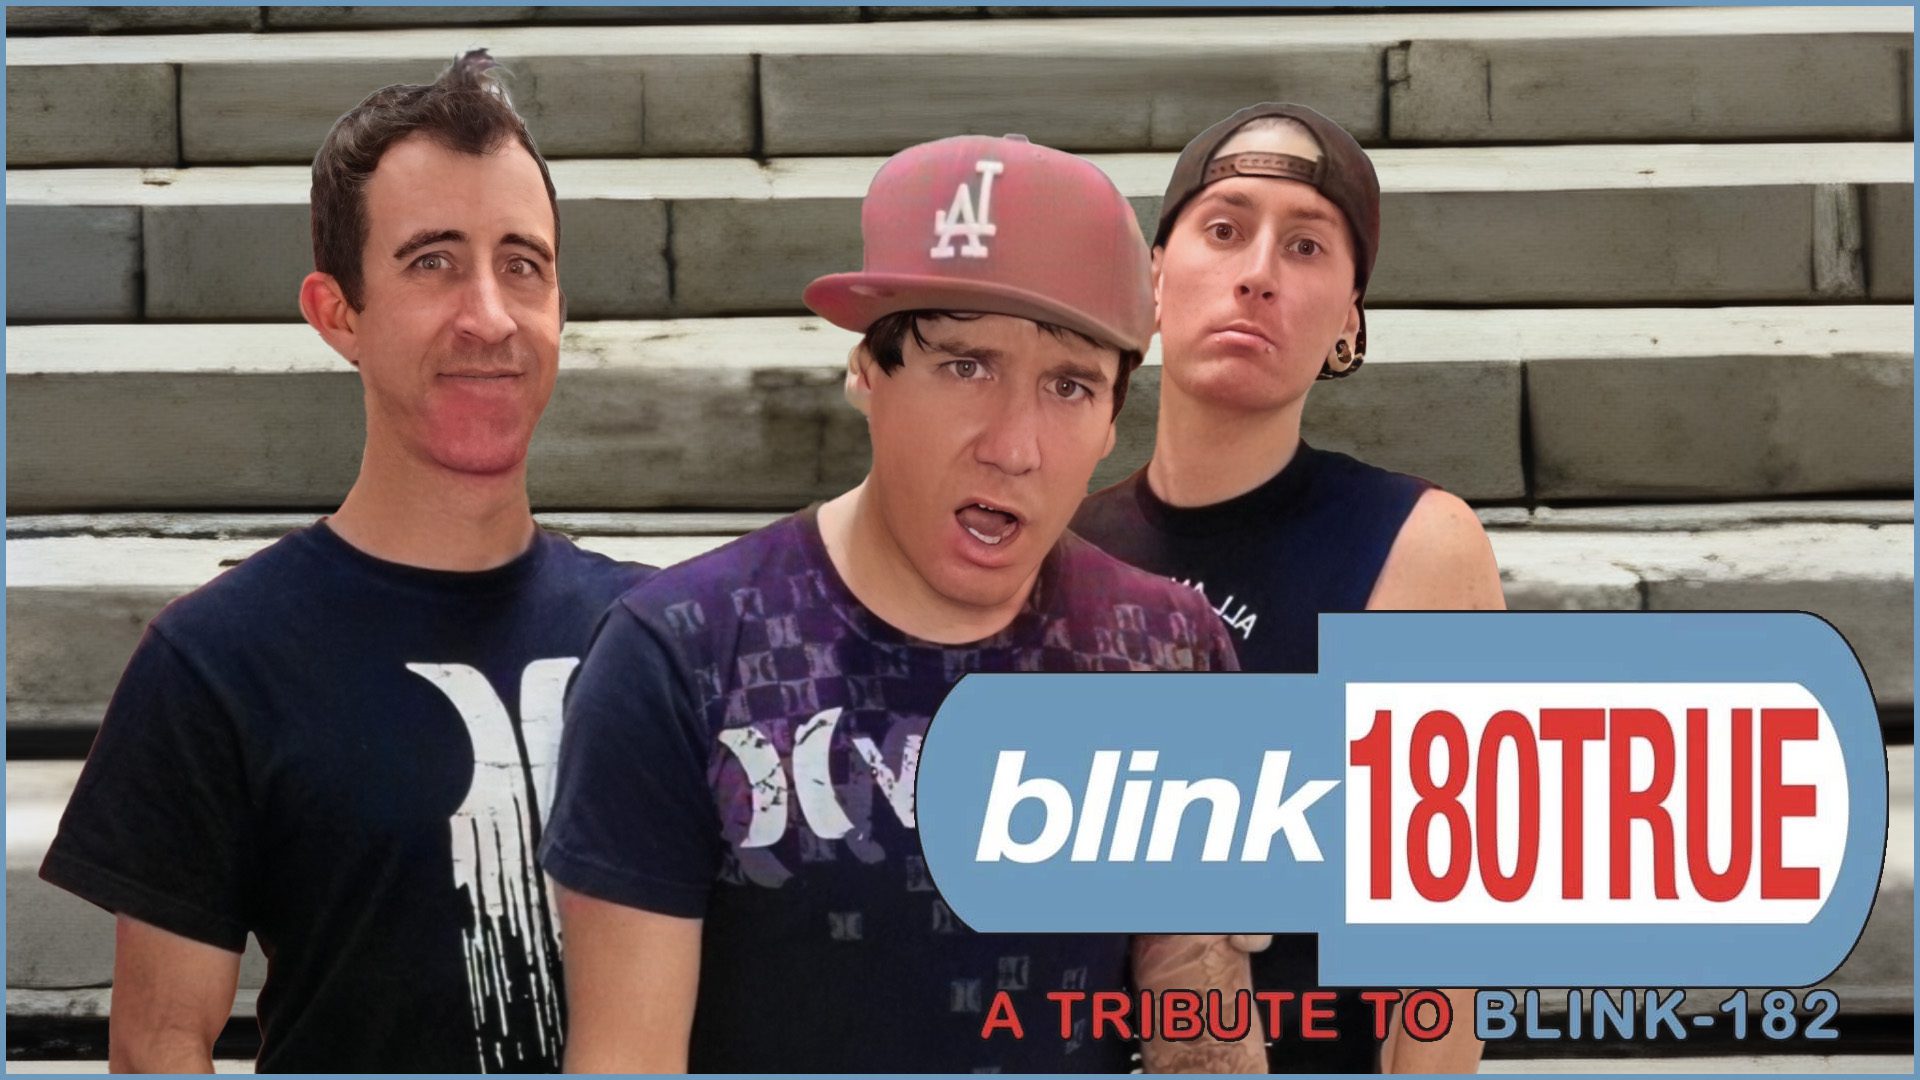 Blink-180True